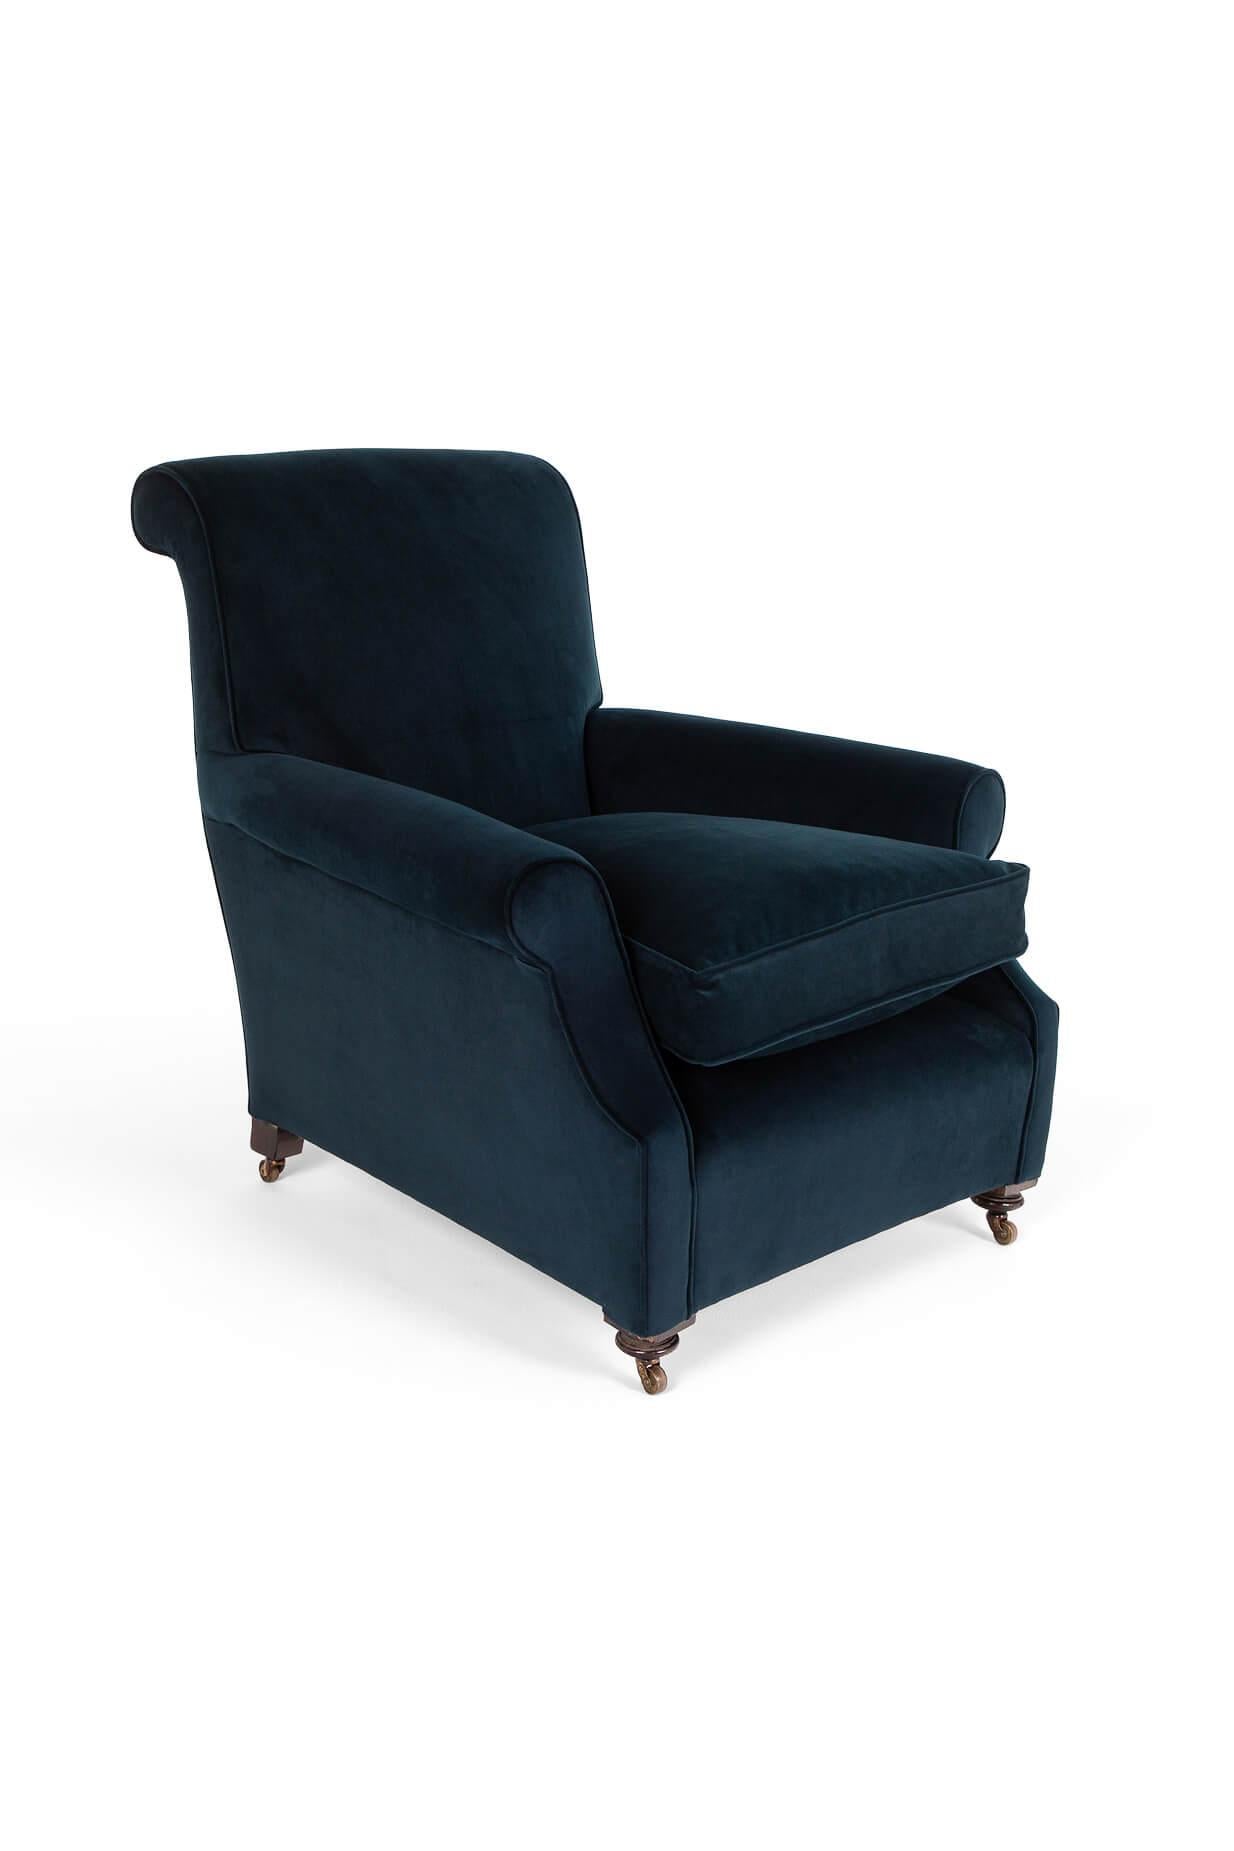 Un magnifique bleu marine  fauteuil aux proportions généreuses.

Il est doté d'un dossier haut, d'accoudoirs en volutes et d'une assise large et profonde.

Cadre en acajou avec pieds avant tournés reposant sur des roulettes en laiton